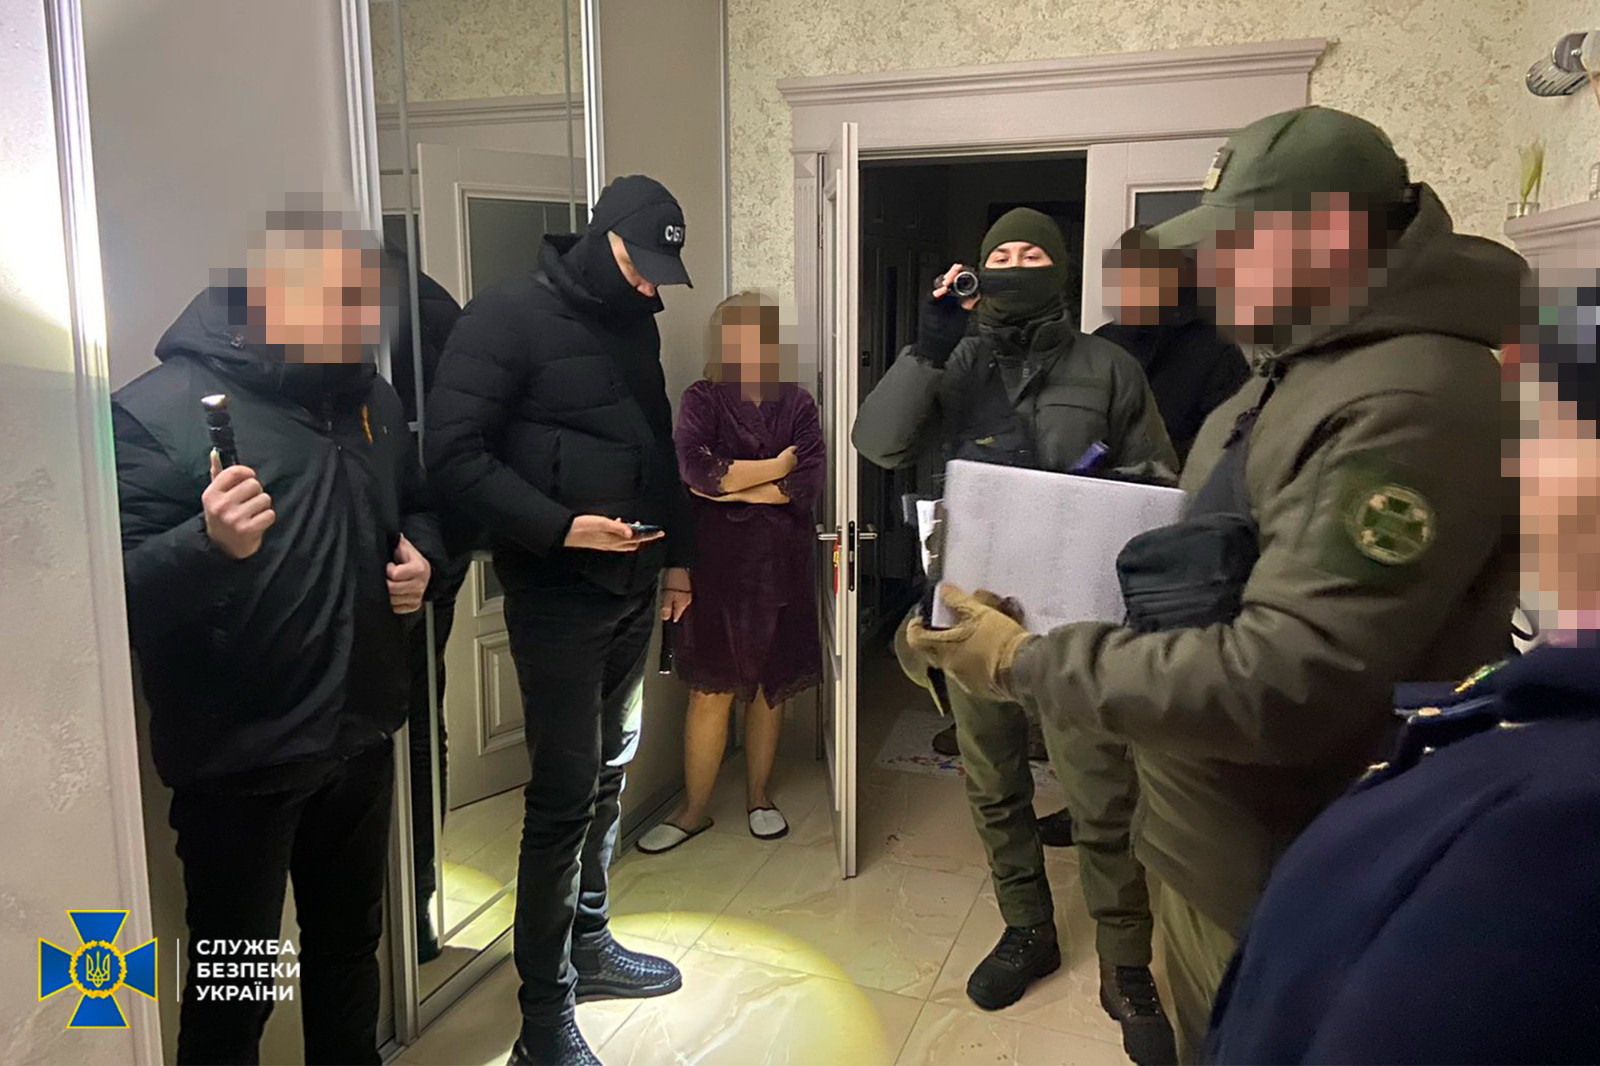 СБУ: компании Оксаны Марченко финансировали Росгвардию и МВД РФ, ей объявили подозрение - 2 - изображение